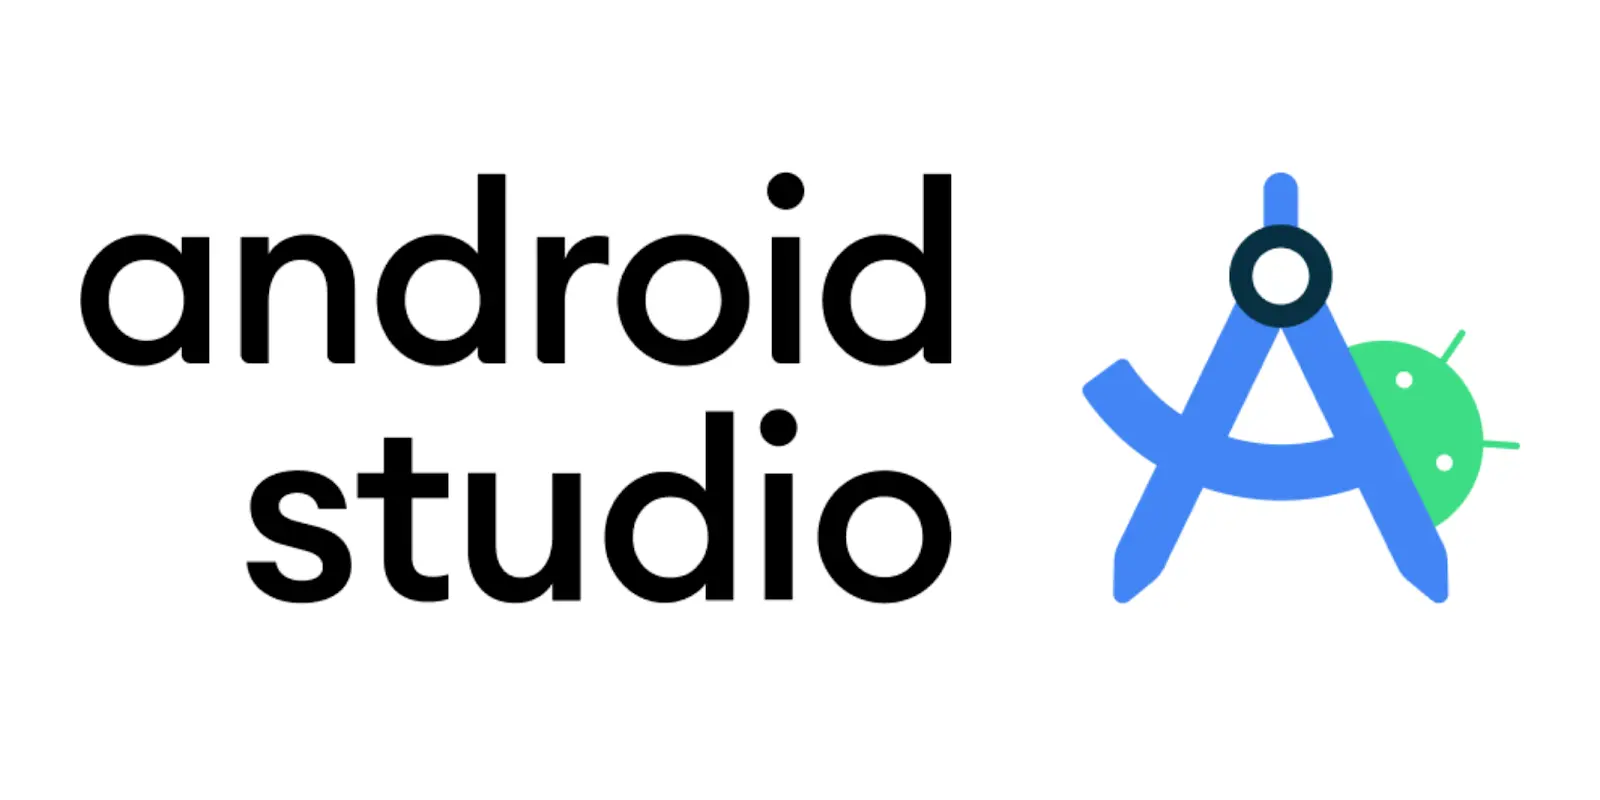 inteligencia artificial android studio - Cómo agregar IA en Android Studio